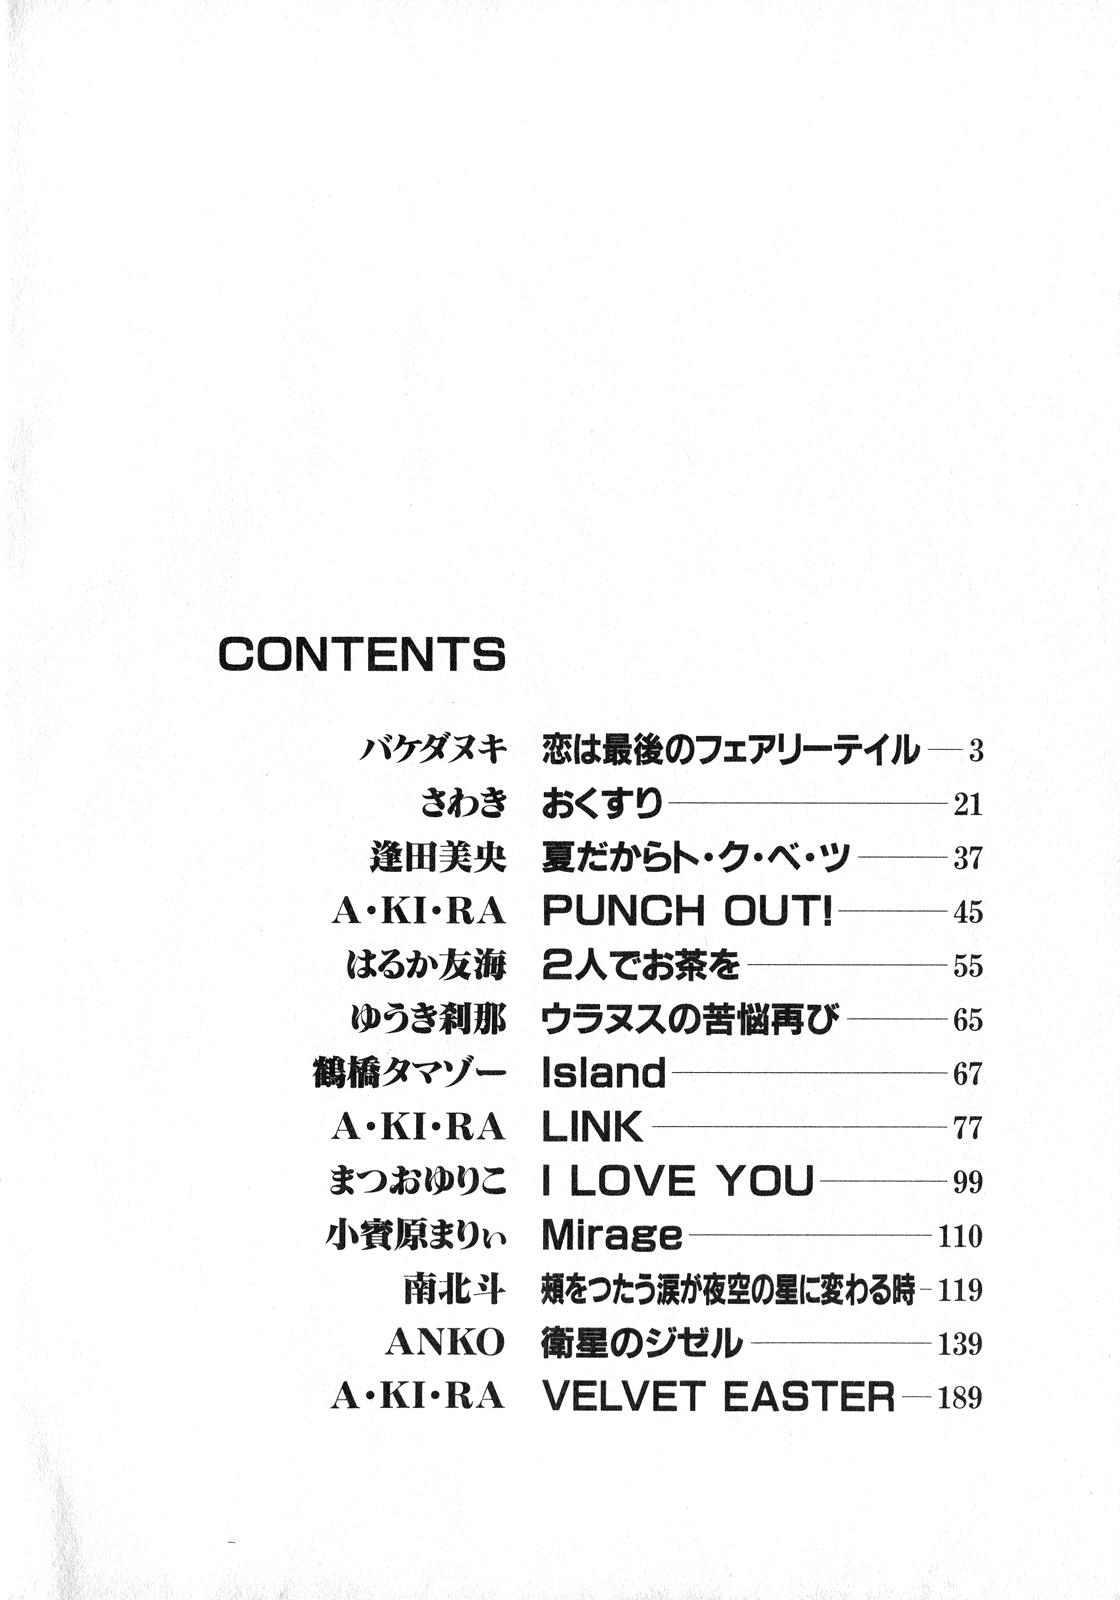 Blow Job Lunatic Party 8 - Sailor moon Cam Porn - Page 3